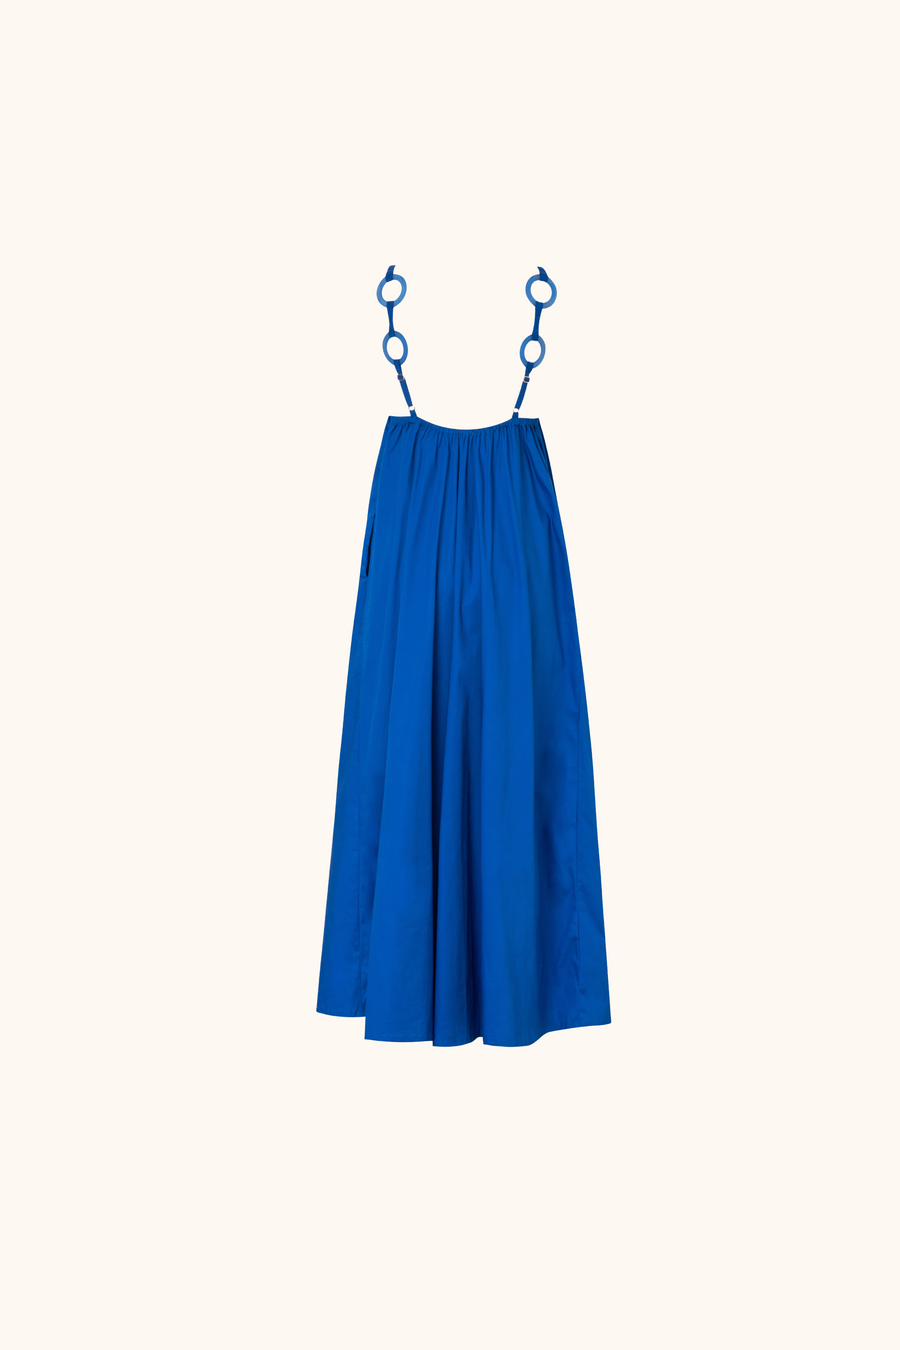 Bahama Blue Maxi Dress